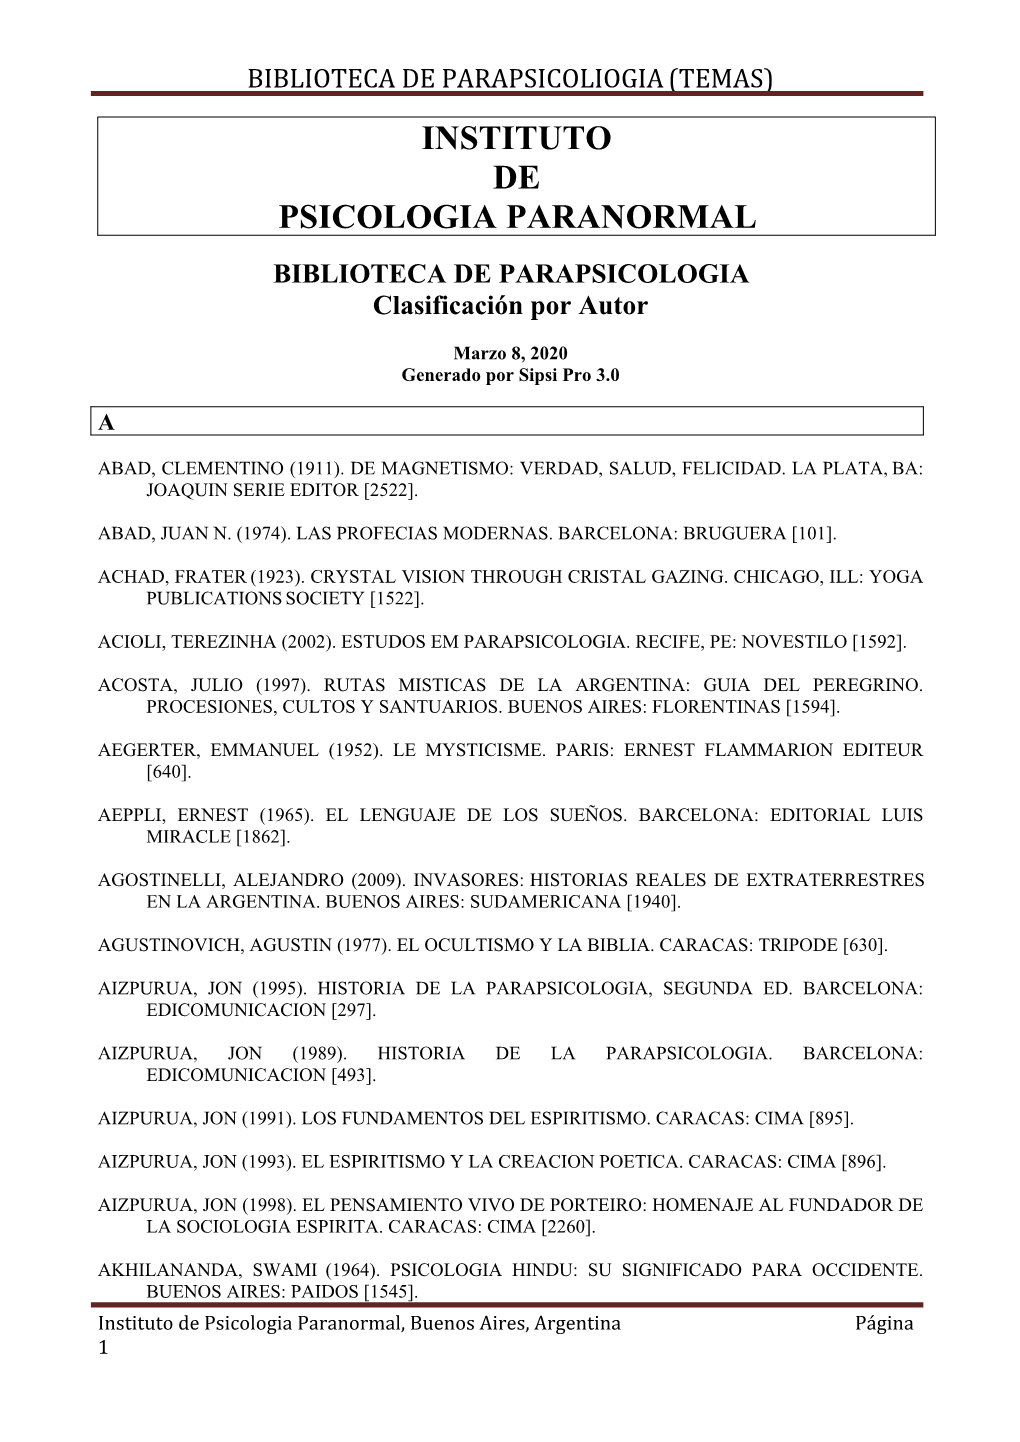 INSTITUTO DE PSICOLOGIA PARANORMAL BIBLIOTECA DE PARAPSICOLOGIA Clasificación Por Autor